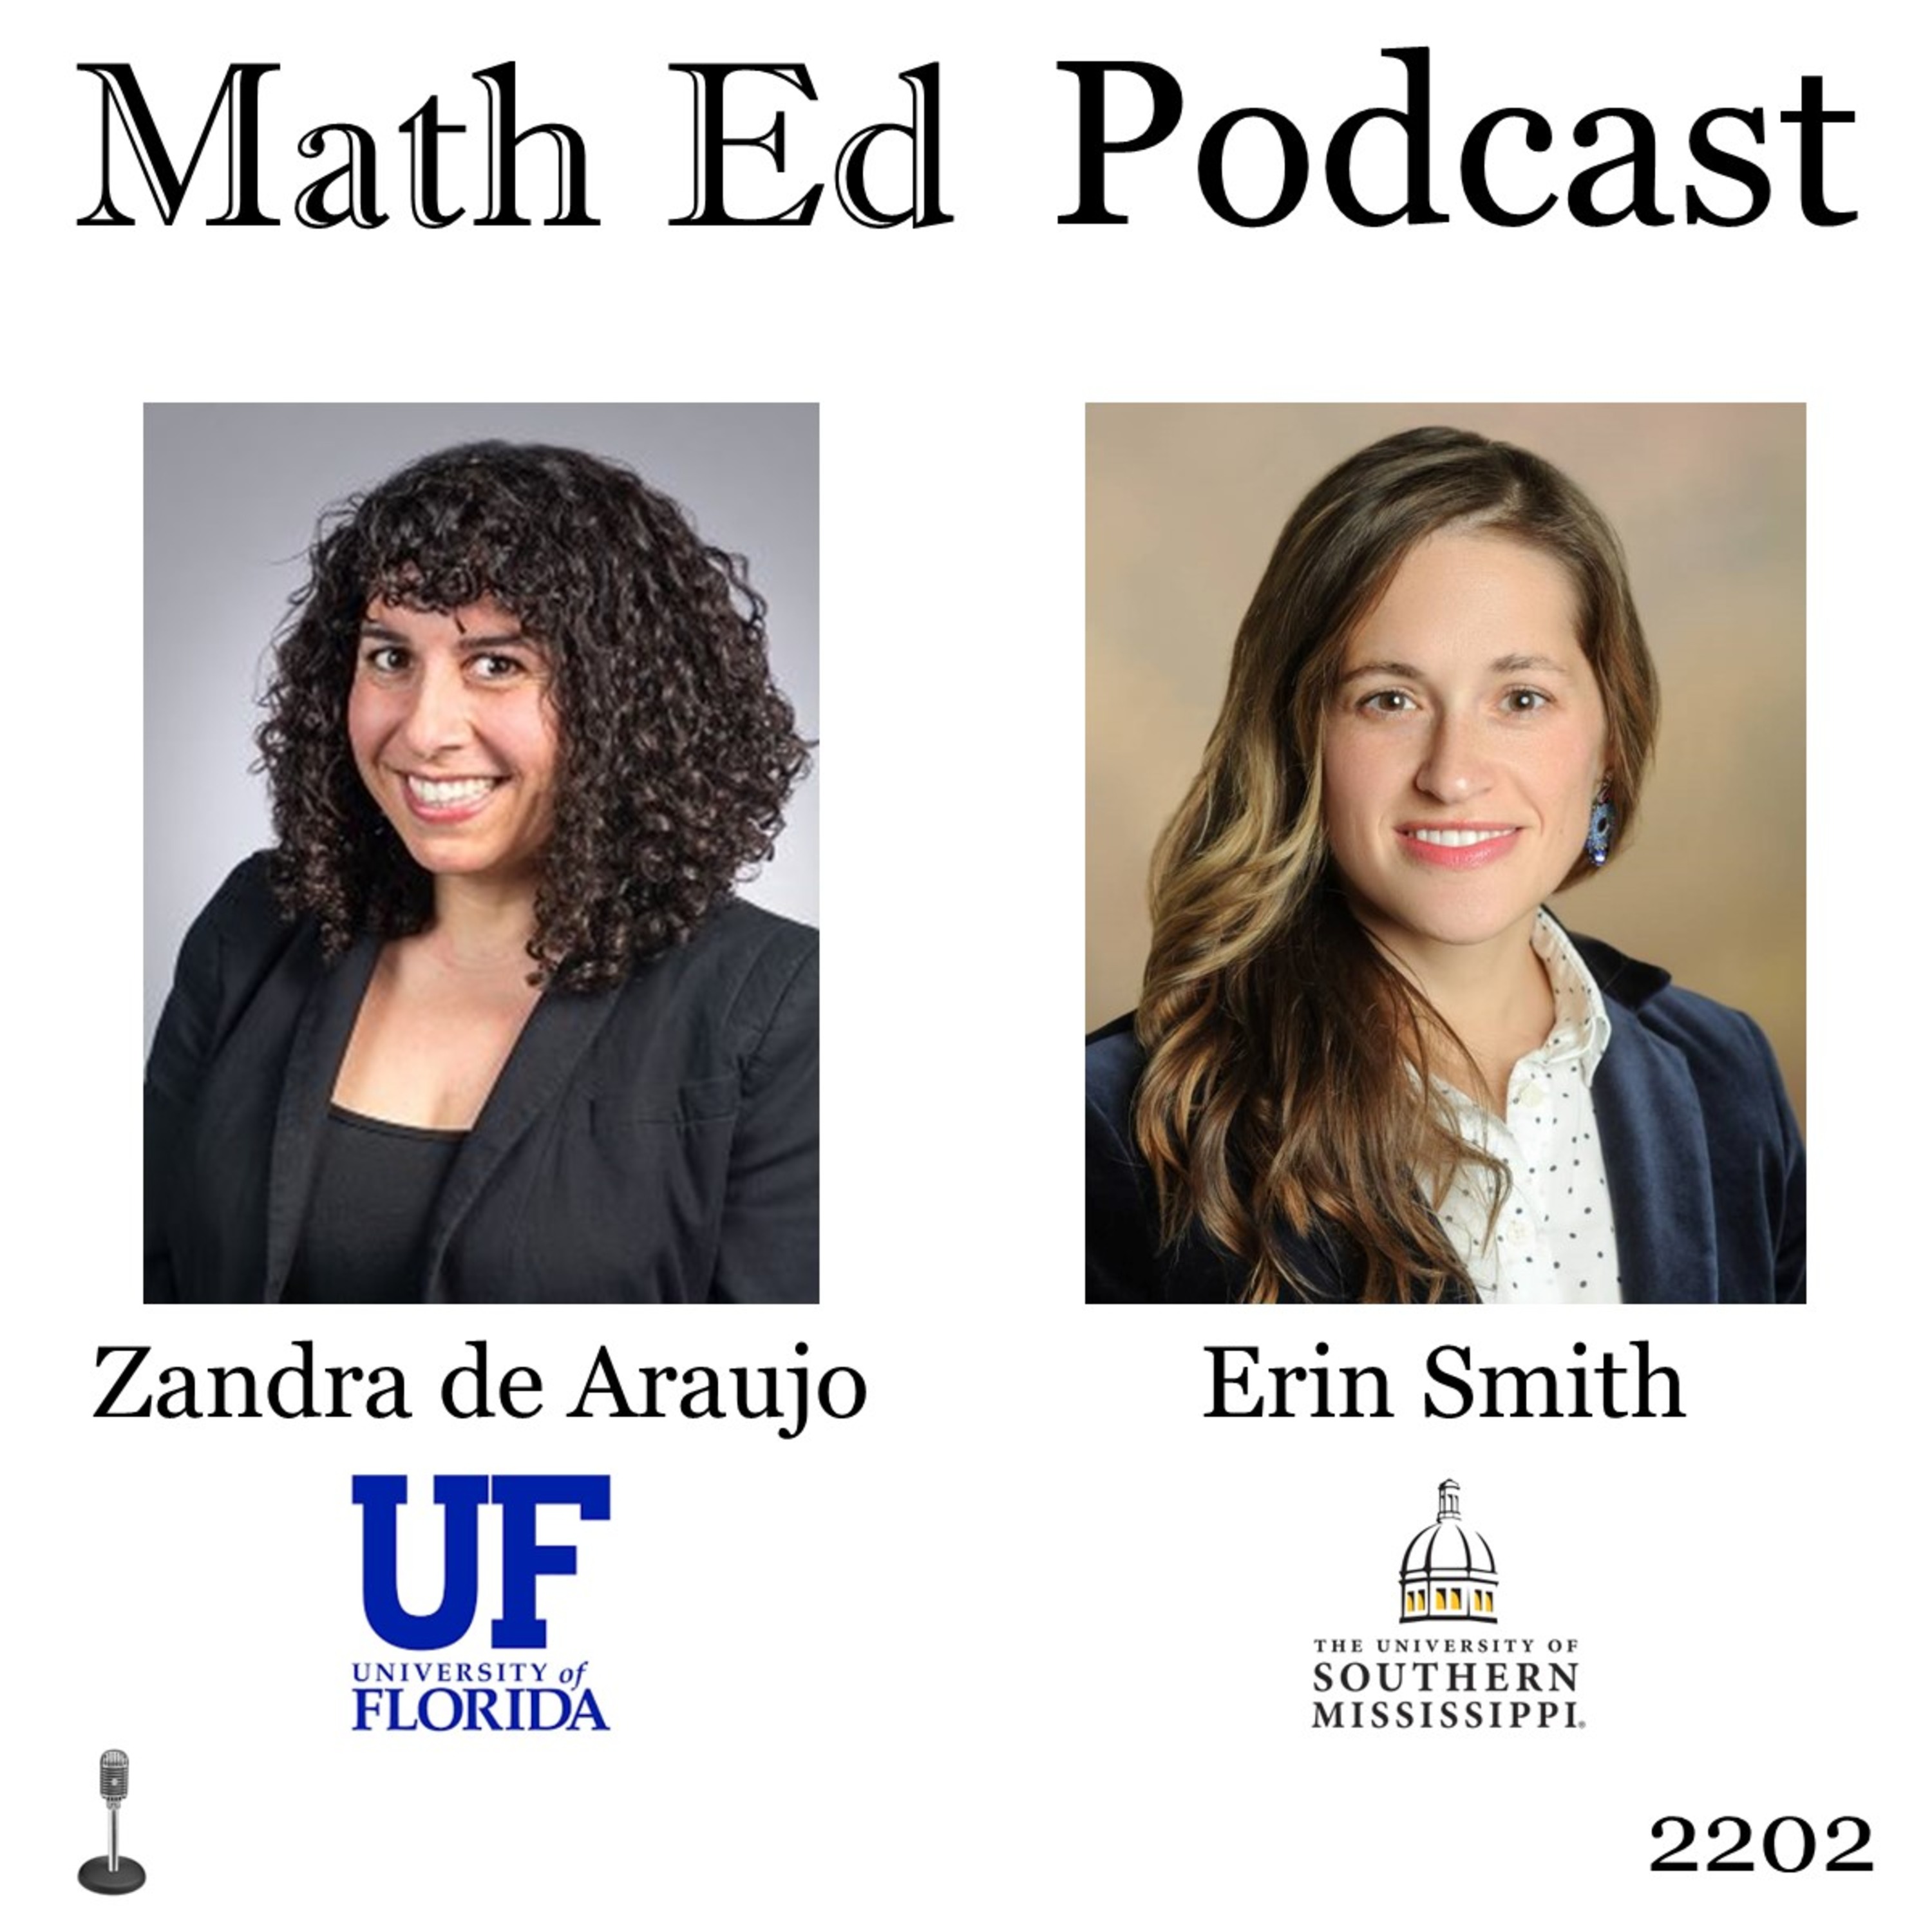 Episode 2: 2202: Zandra de Araujo and Erin Smith